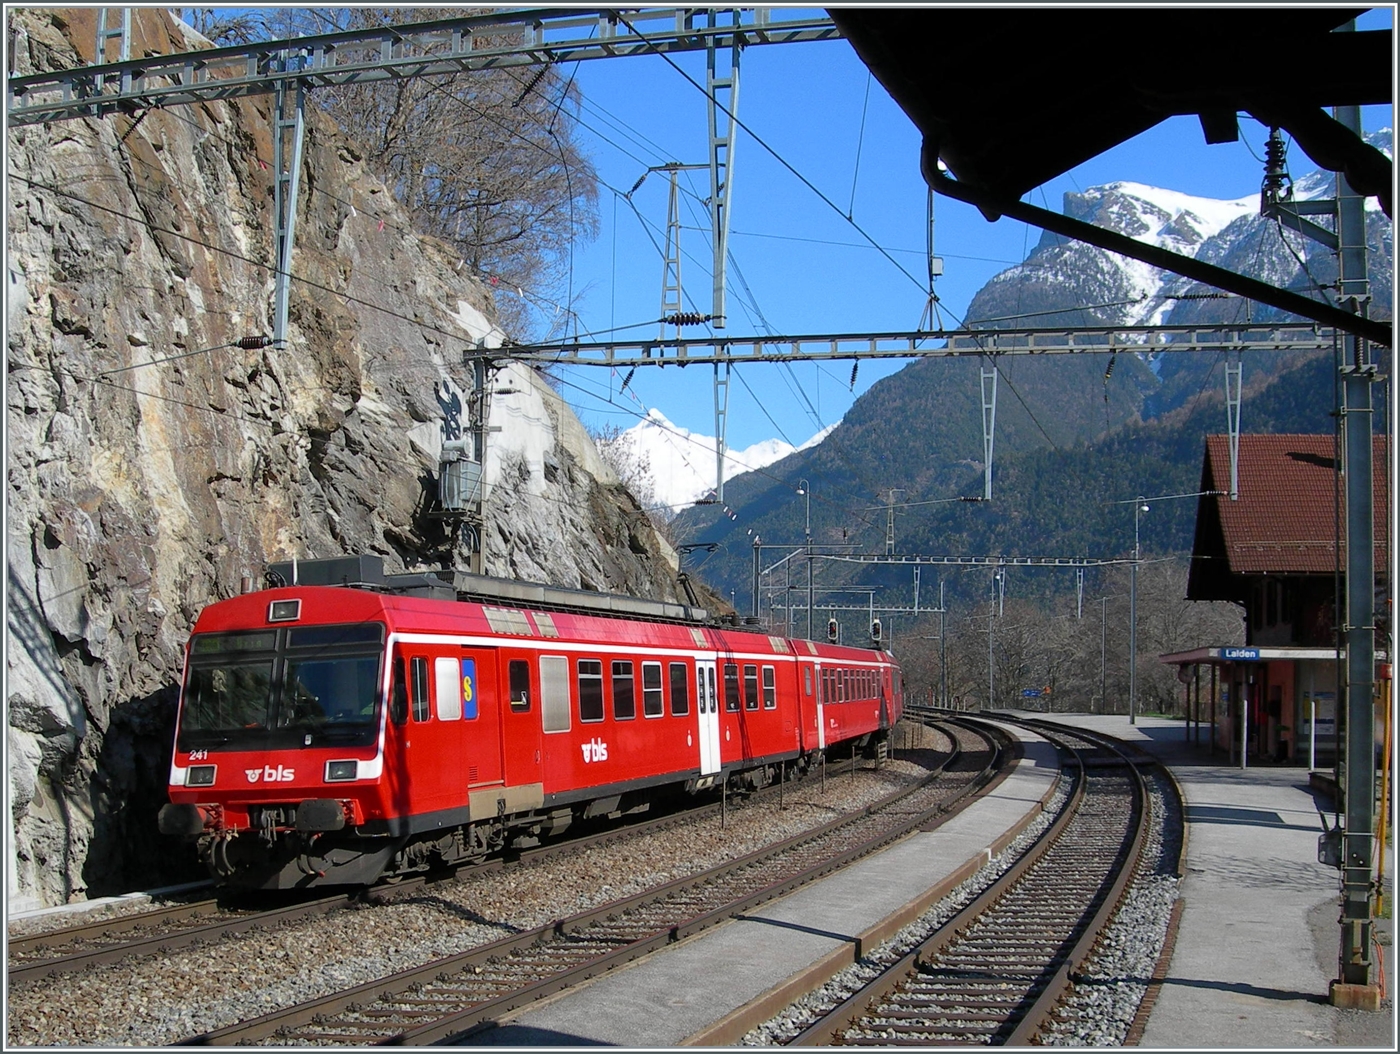 Die von bei der Fusion von der RM übernommen RBDe 566 Pendelzüge fuhren einige Zeit im RM Rot als BLS Regionalzüge. Mit dem dem schiebenden RBDe 566 241 verlässt der Regionalzug von Goppenstein nach Brig den Bahnhof Lalden.

16. März 2007